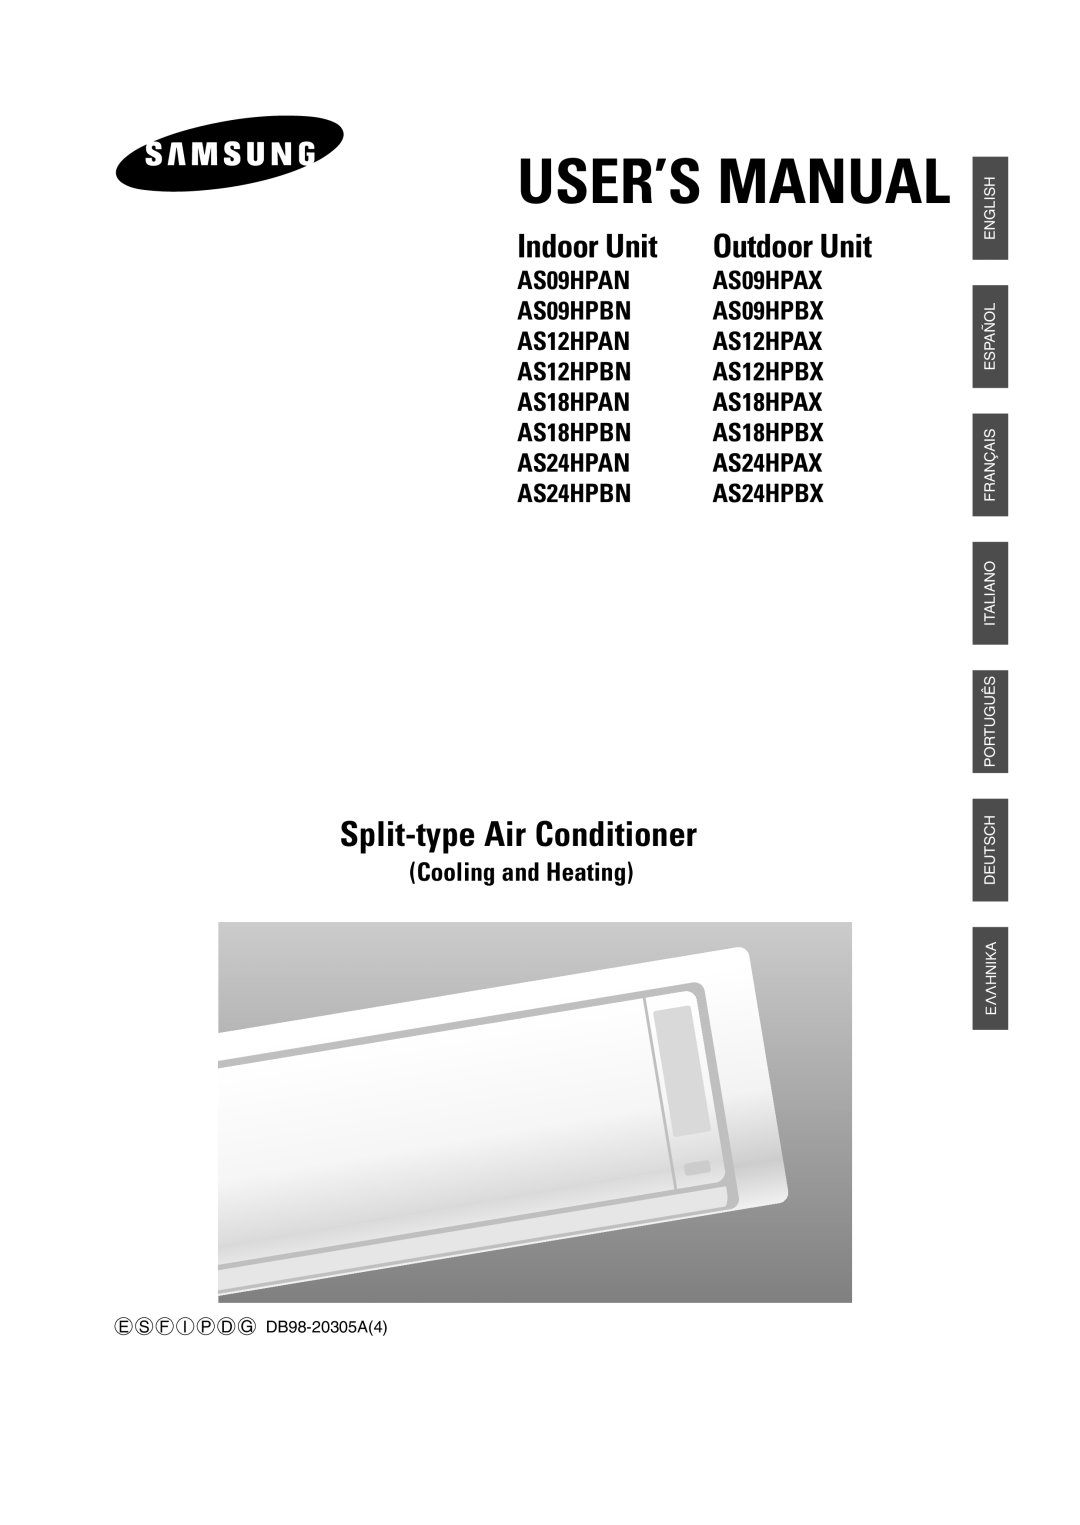 Samsung AS24HPBN, AS09HPBN, AS18HPBN, AS12HPBX, AS12HPAX manual User’S Manual, Split-type Air Conditioner, Indoor Unit 